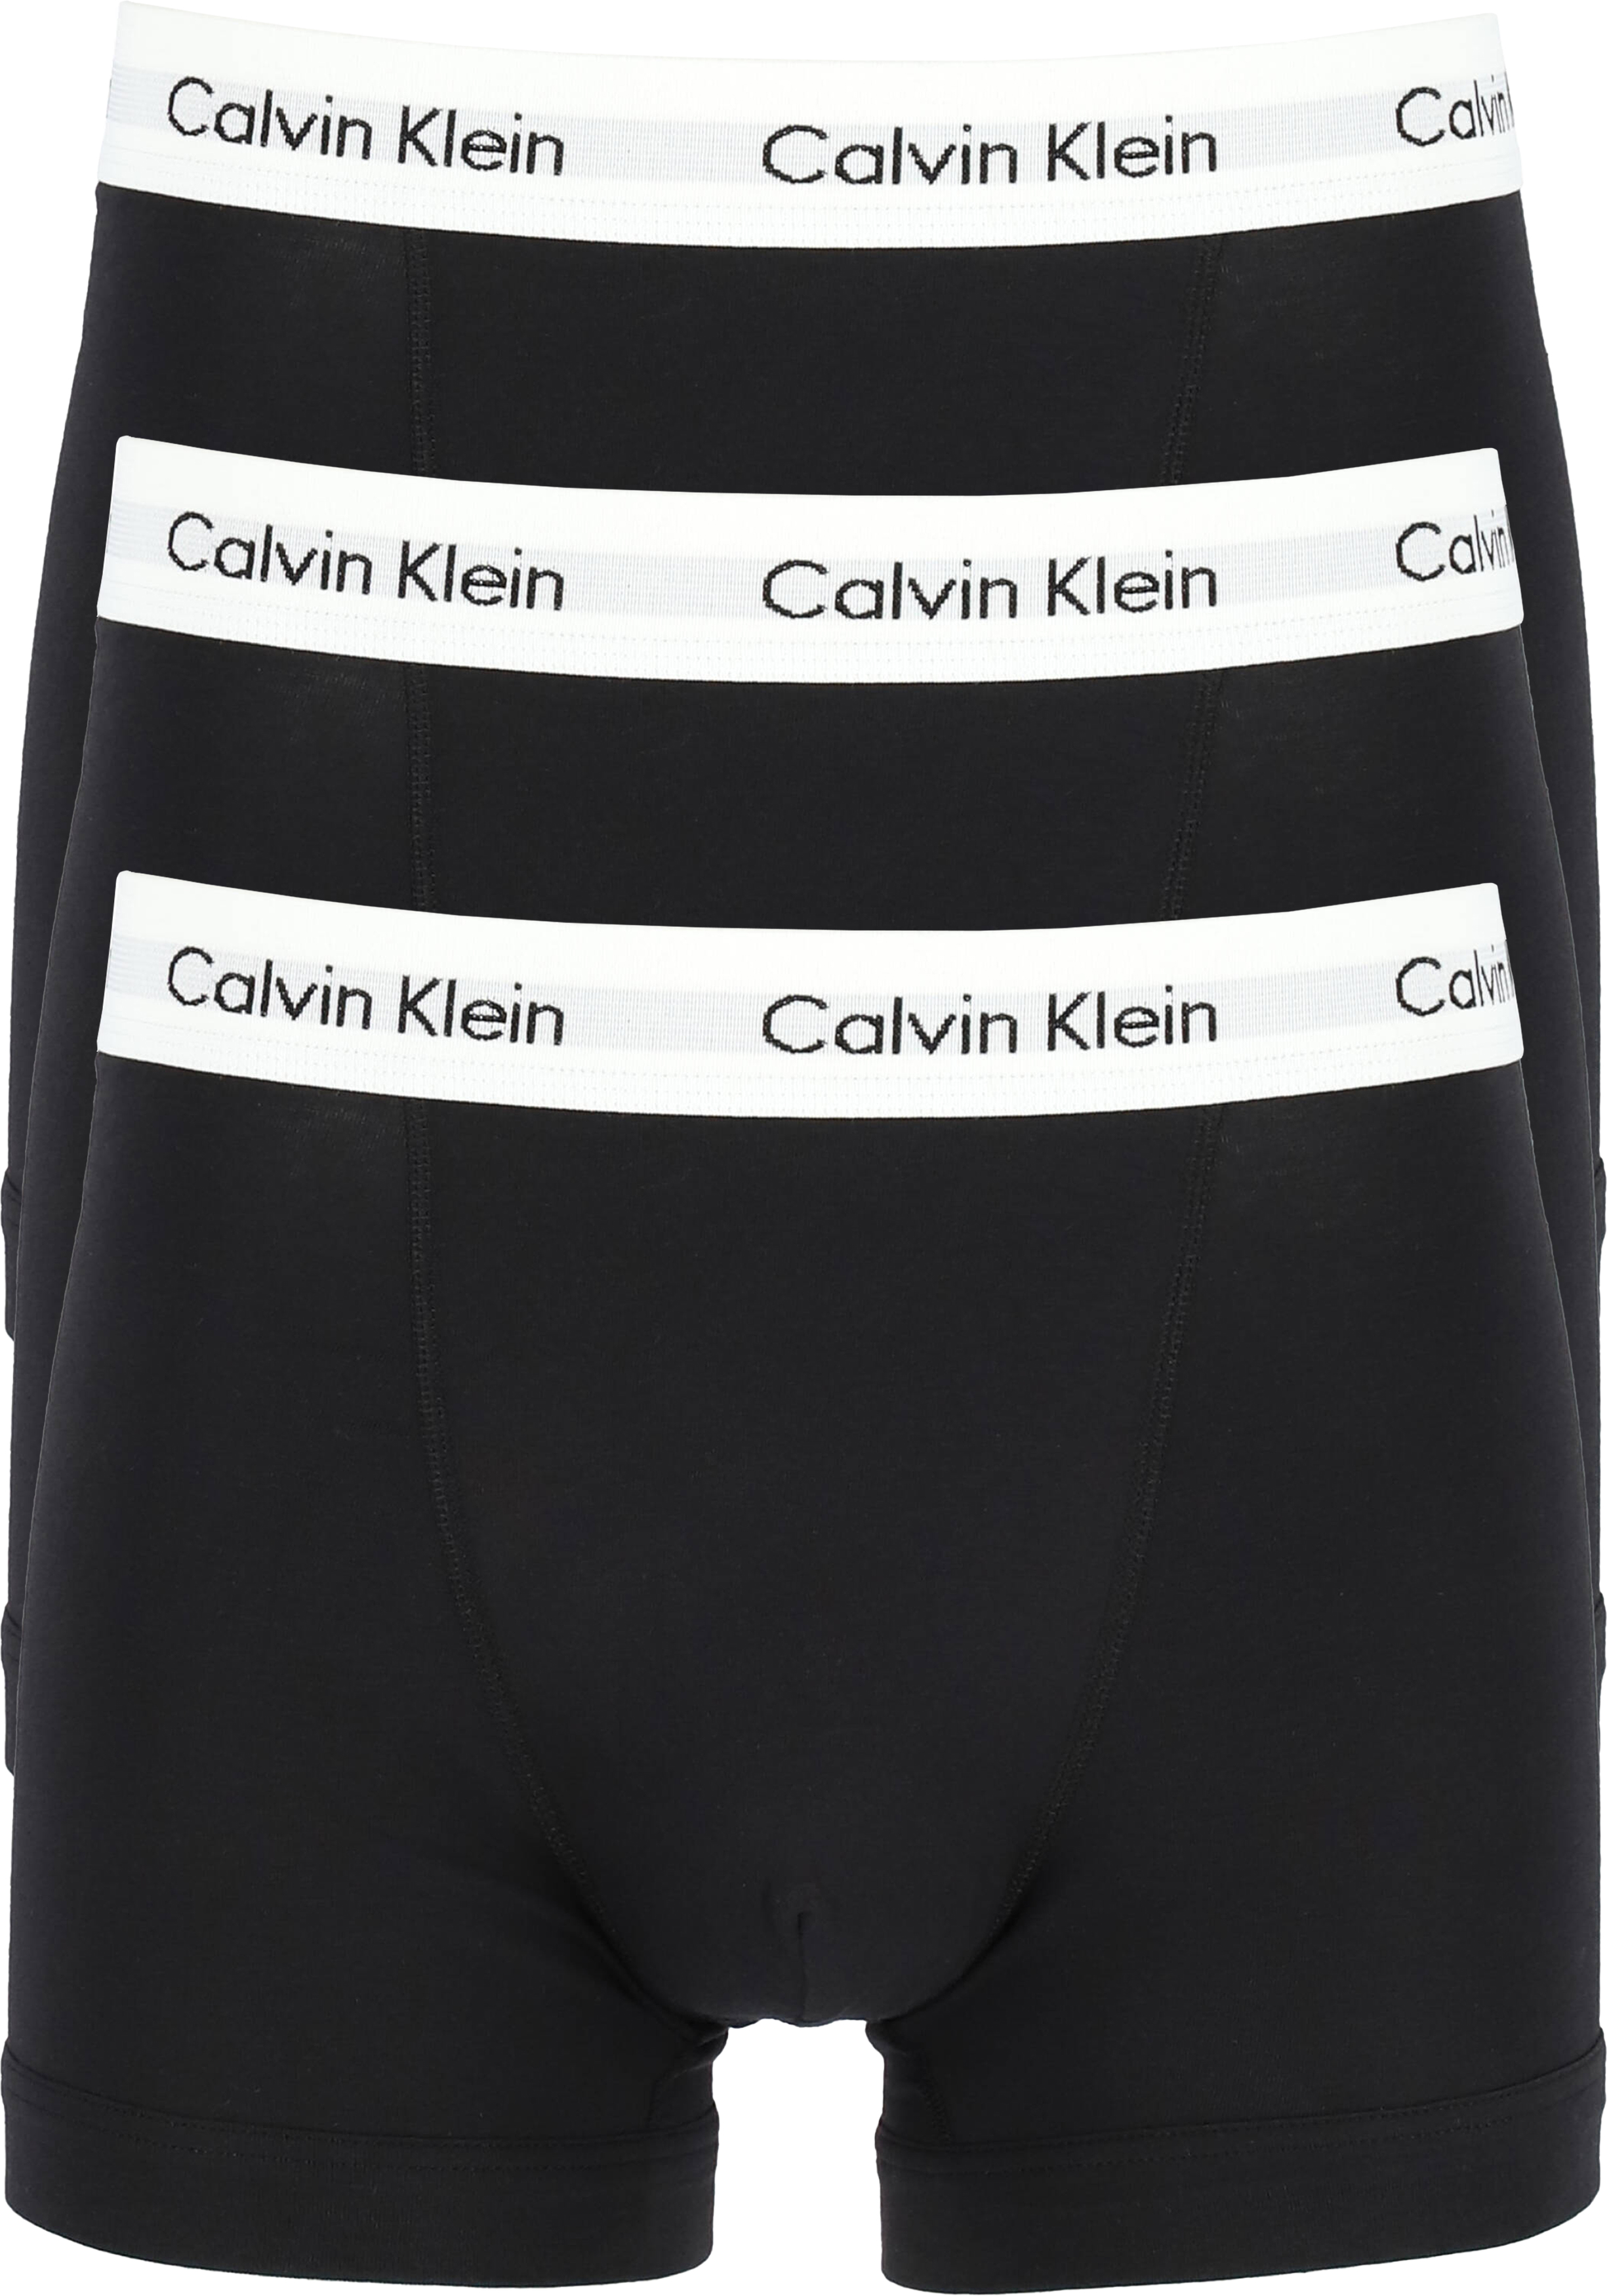 Indringing opslaan Clancy Calvin Klein Trunks (3-pack), zwart - Gratis bezorgd